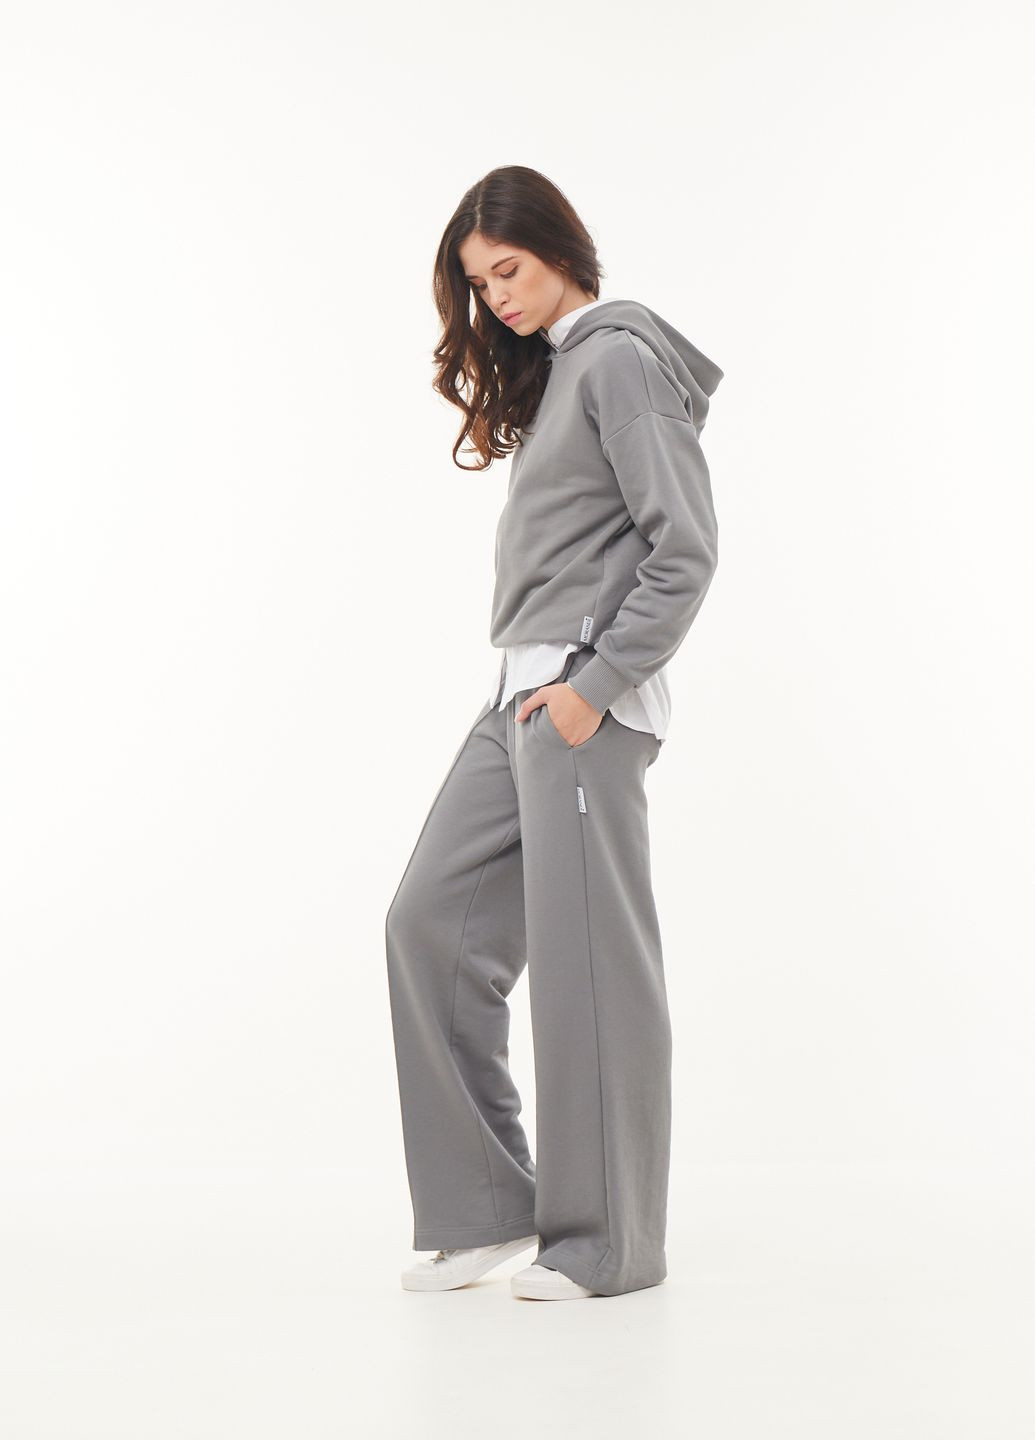 Комплект трехнитка худи с капюшоном и прямые брюки серо-оливковый комплект MORANDI (264749302)